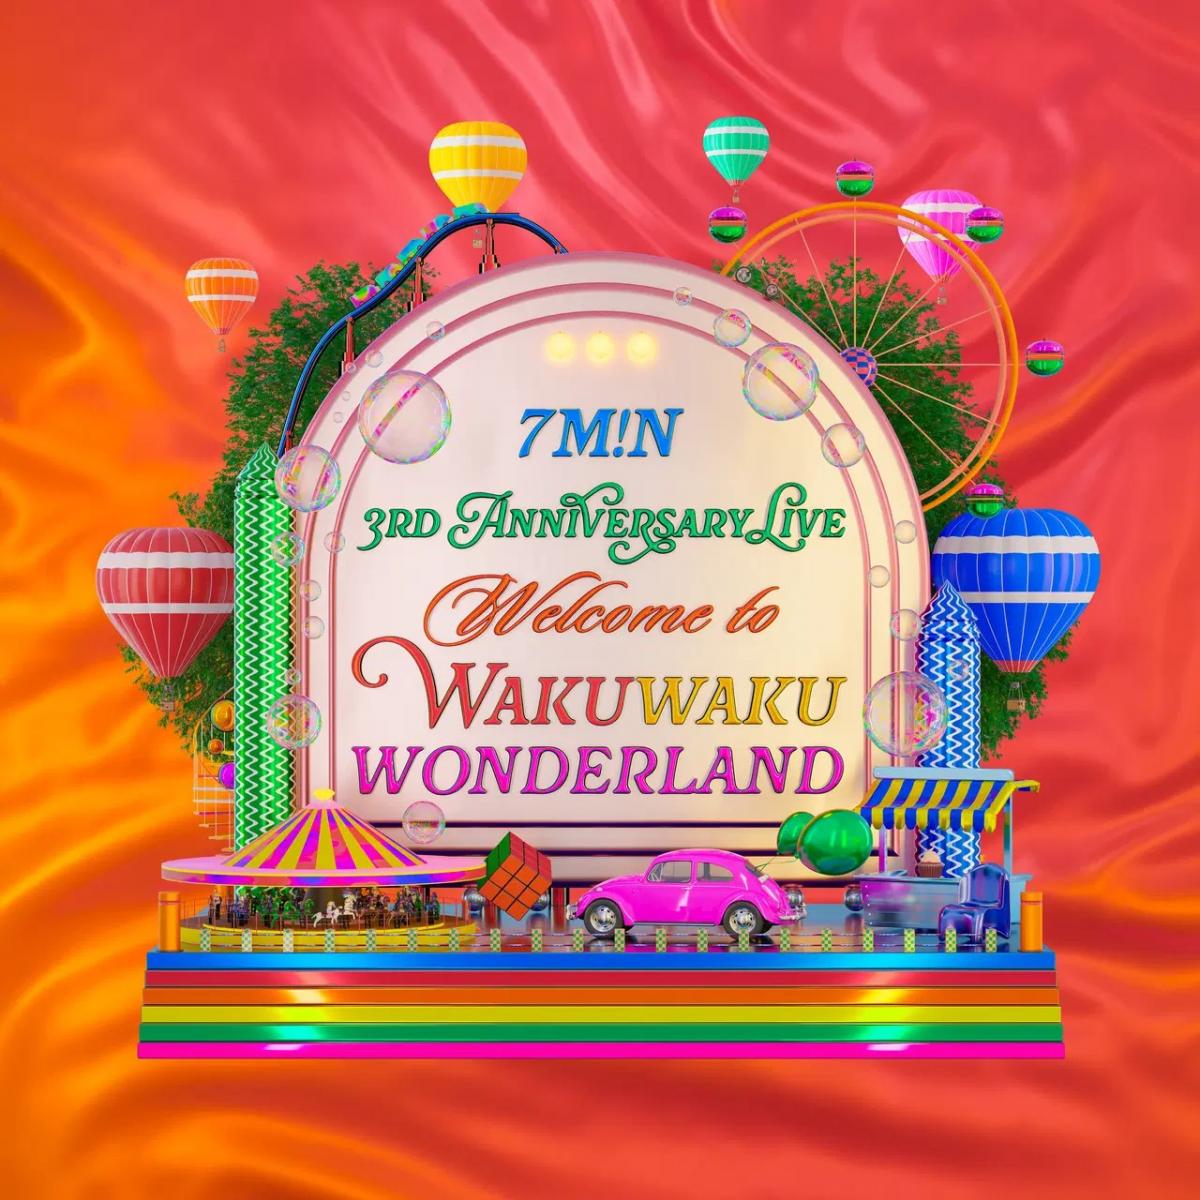 7m!n 3rd Anniversary Live 
~Welcome to Wakuwaku Wonderland~